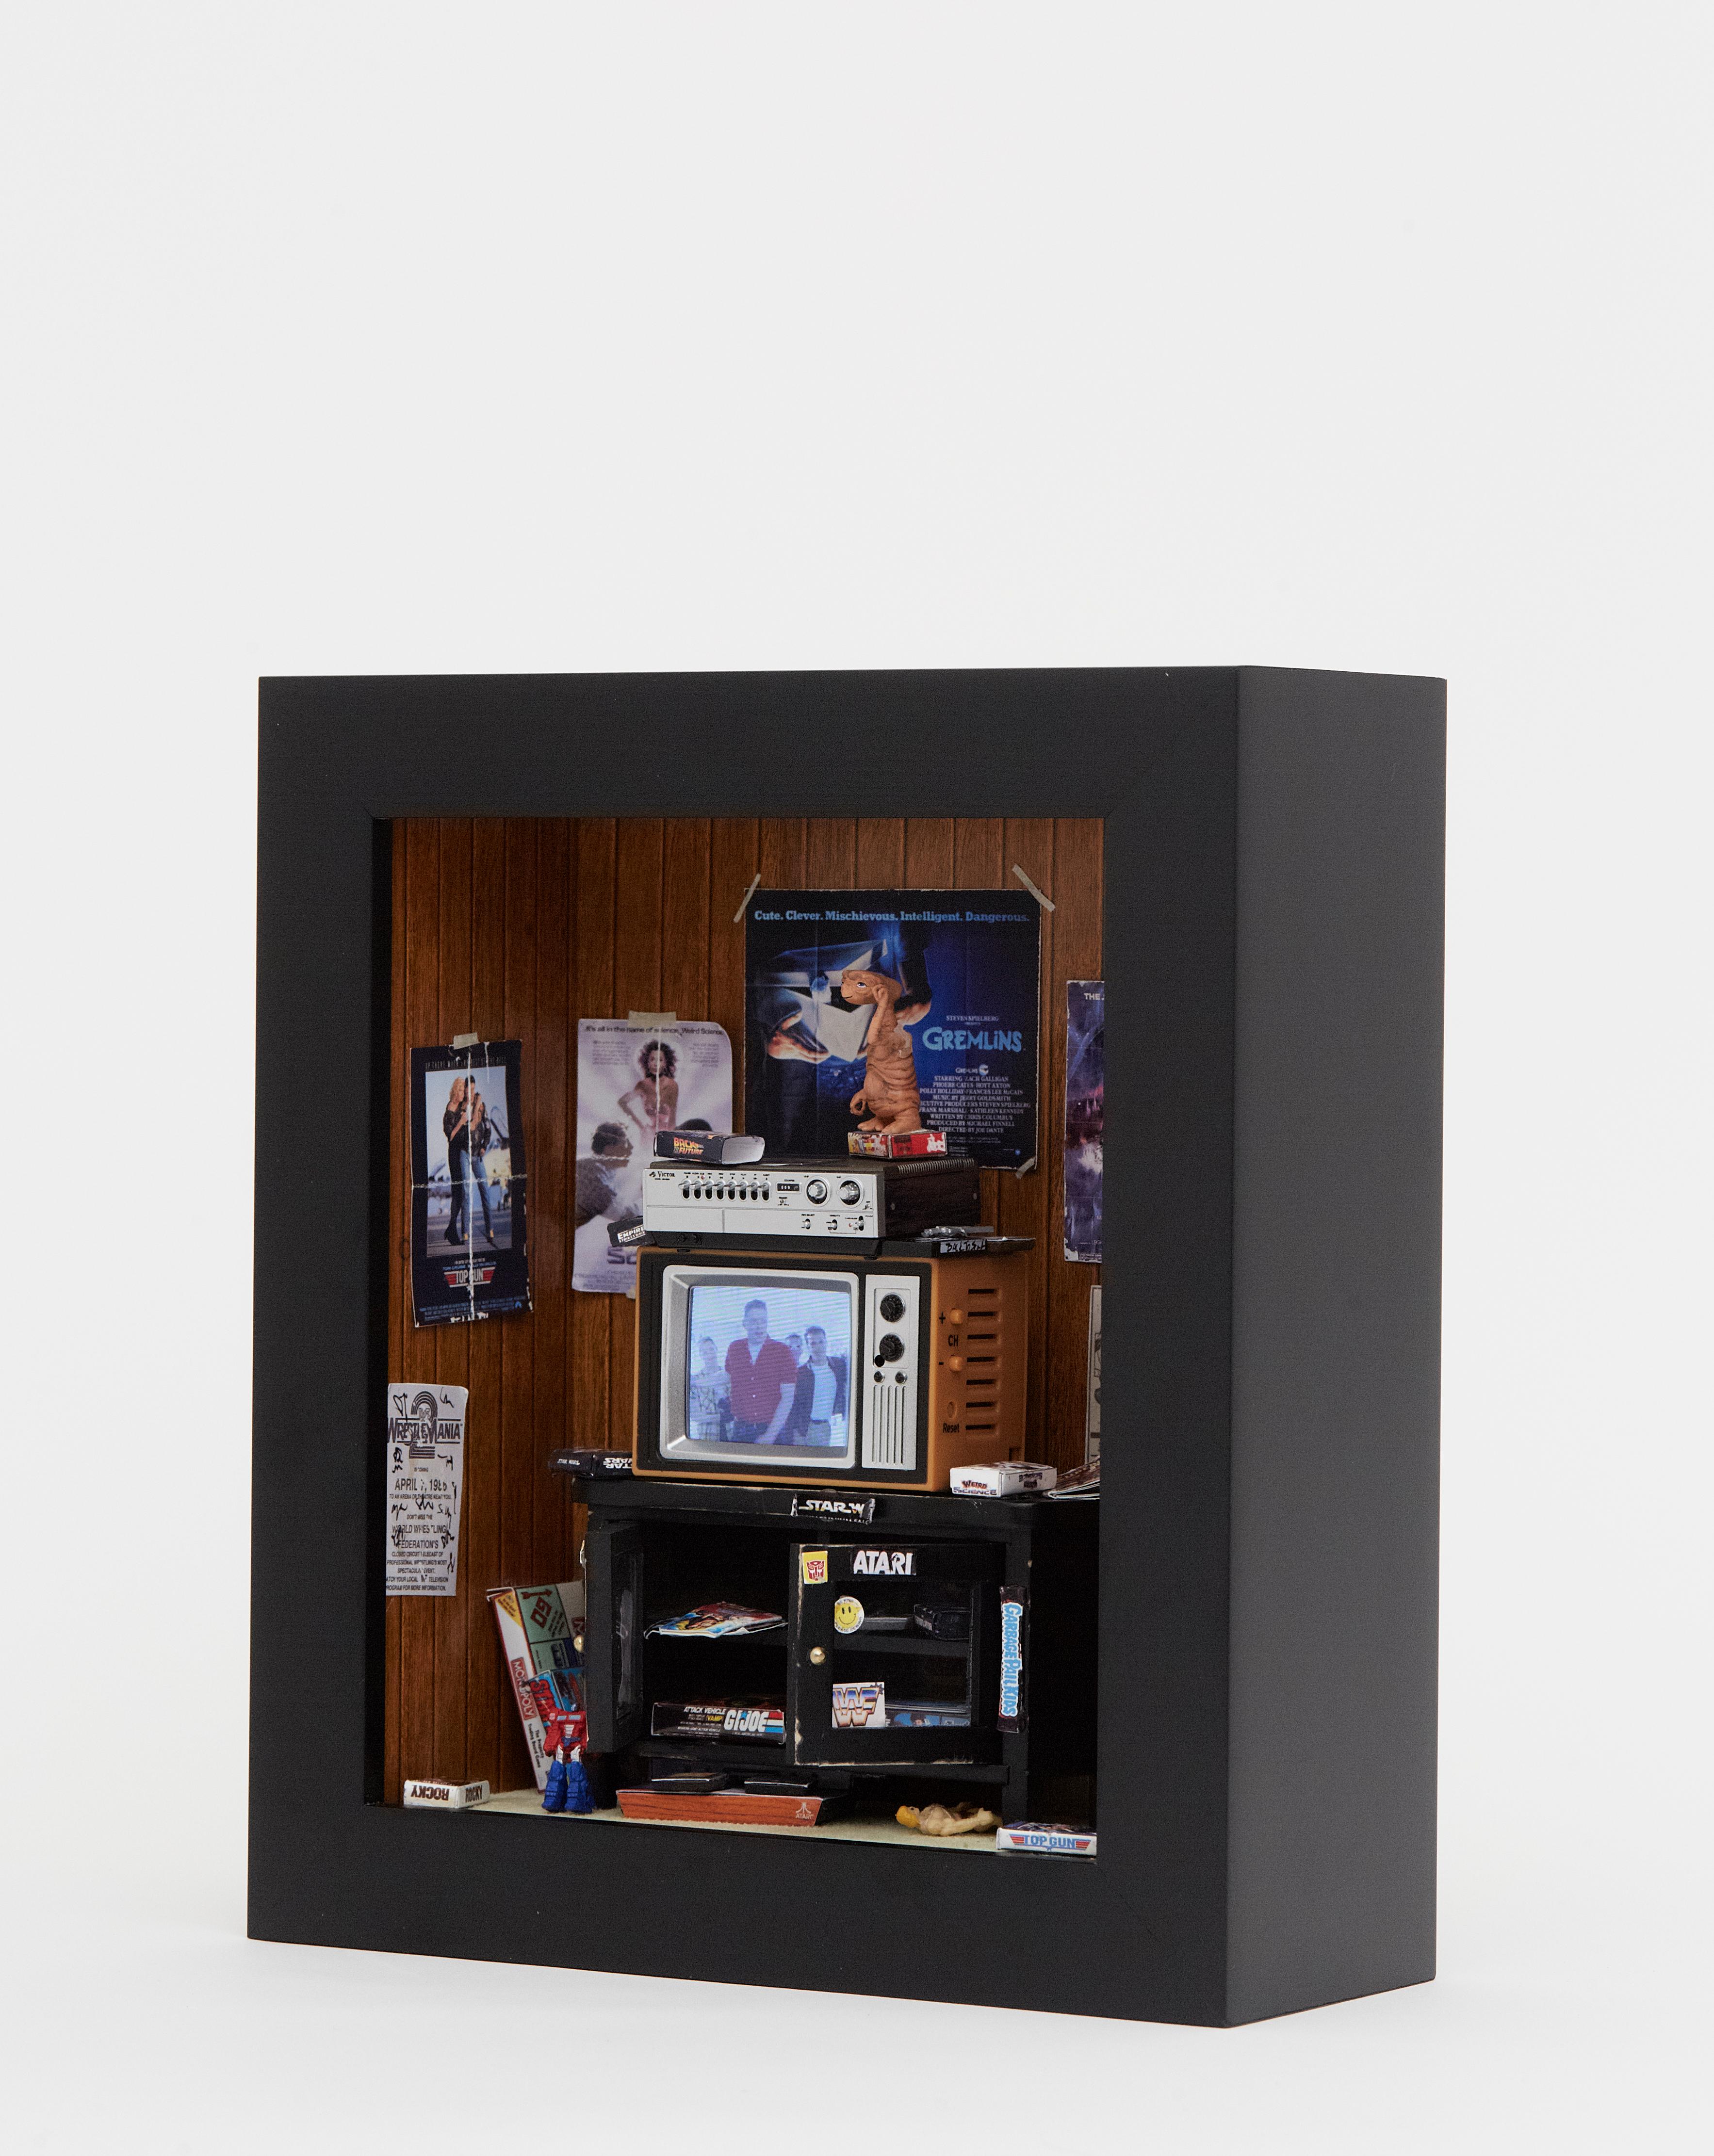 MINIATURE GEN X ROOM DIORAMA BOX -80'S BEDROOM w WORKING T.V. Pop Art - ATARI 4